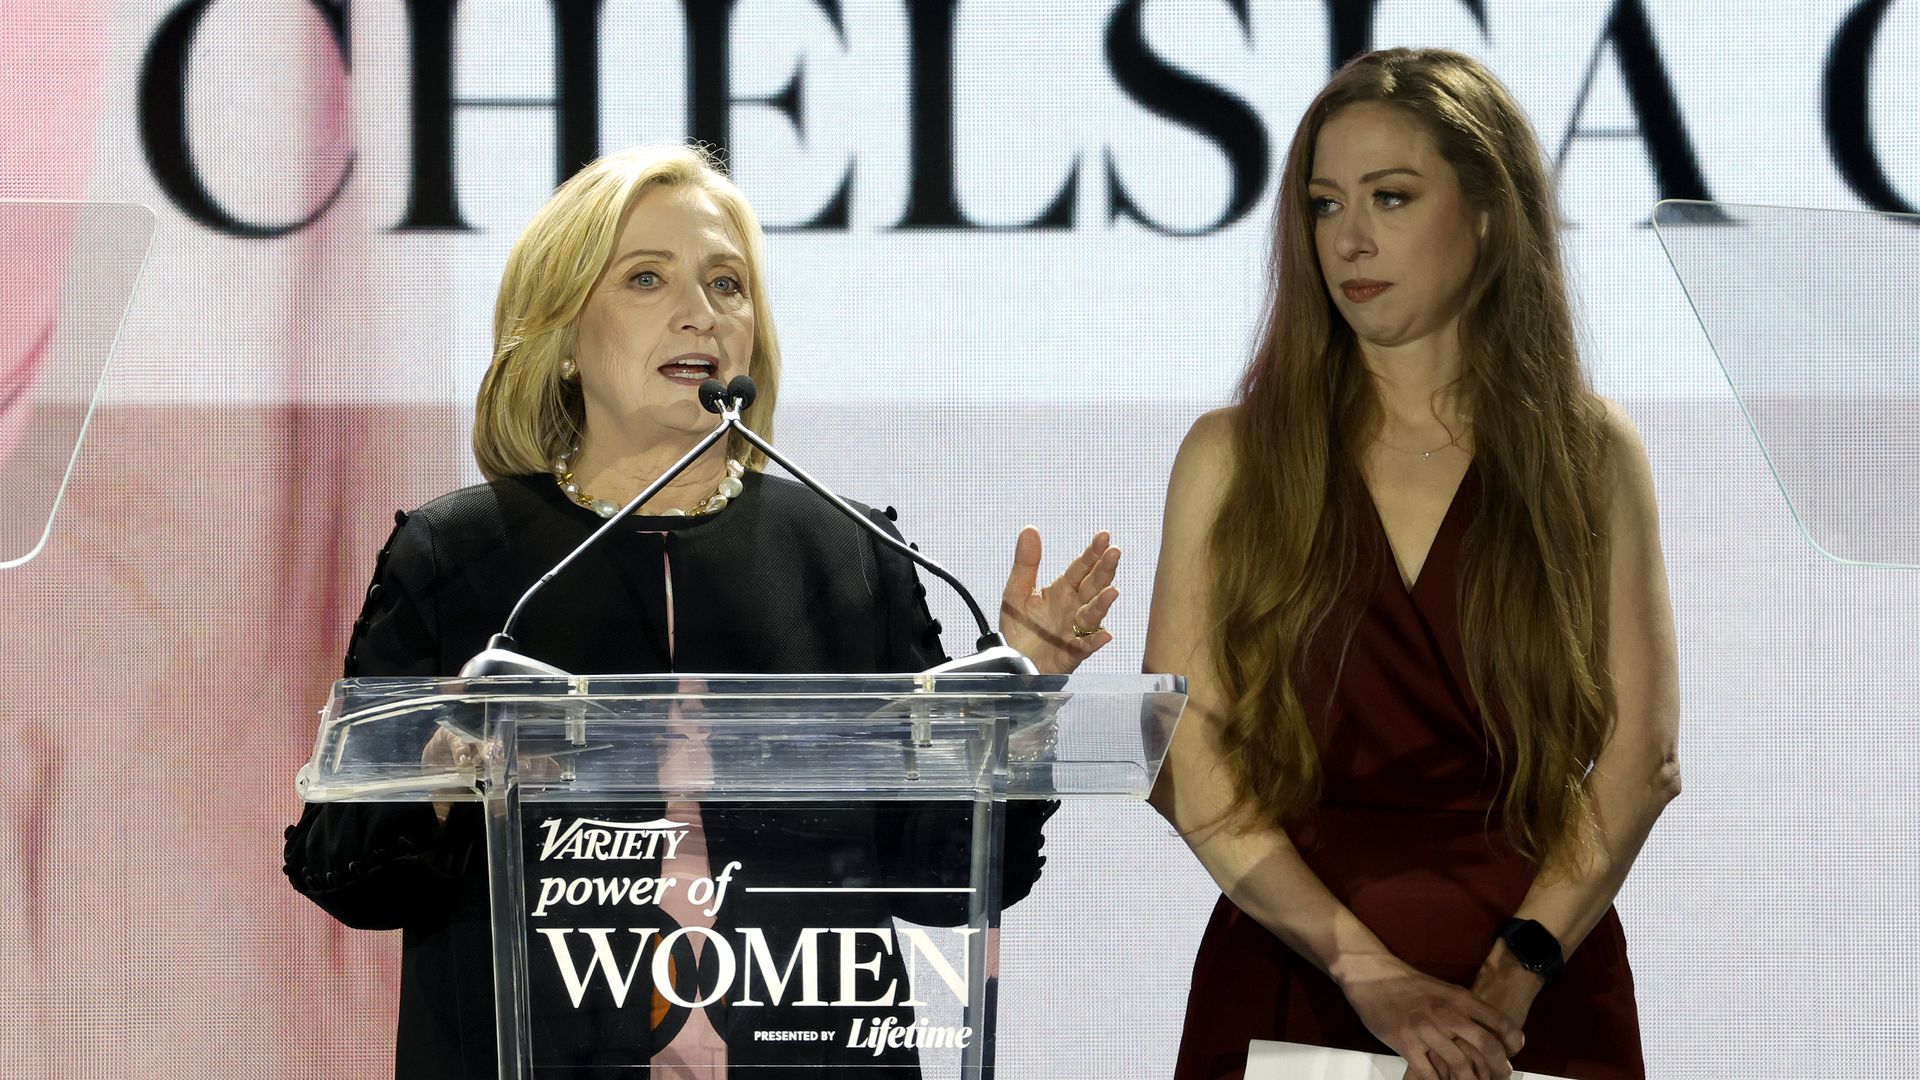 Hillary Clinton and Chelsea Clinton accept an award.